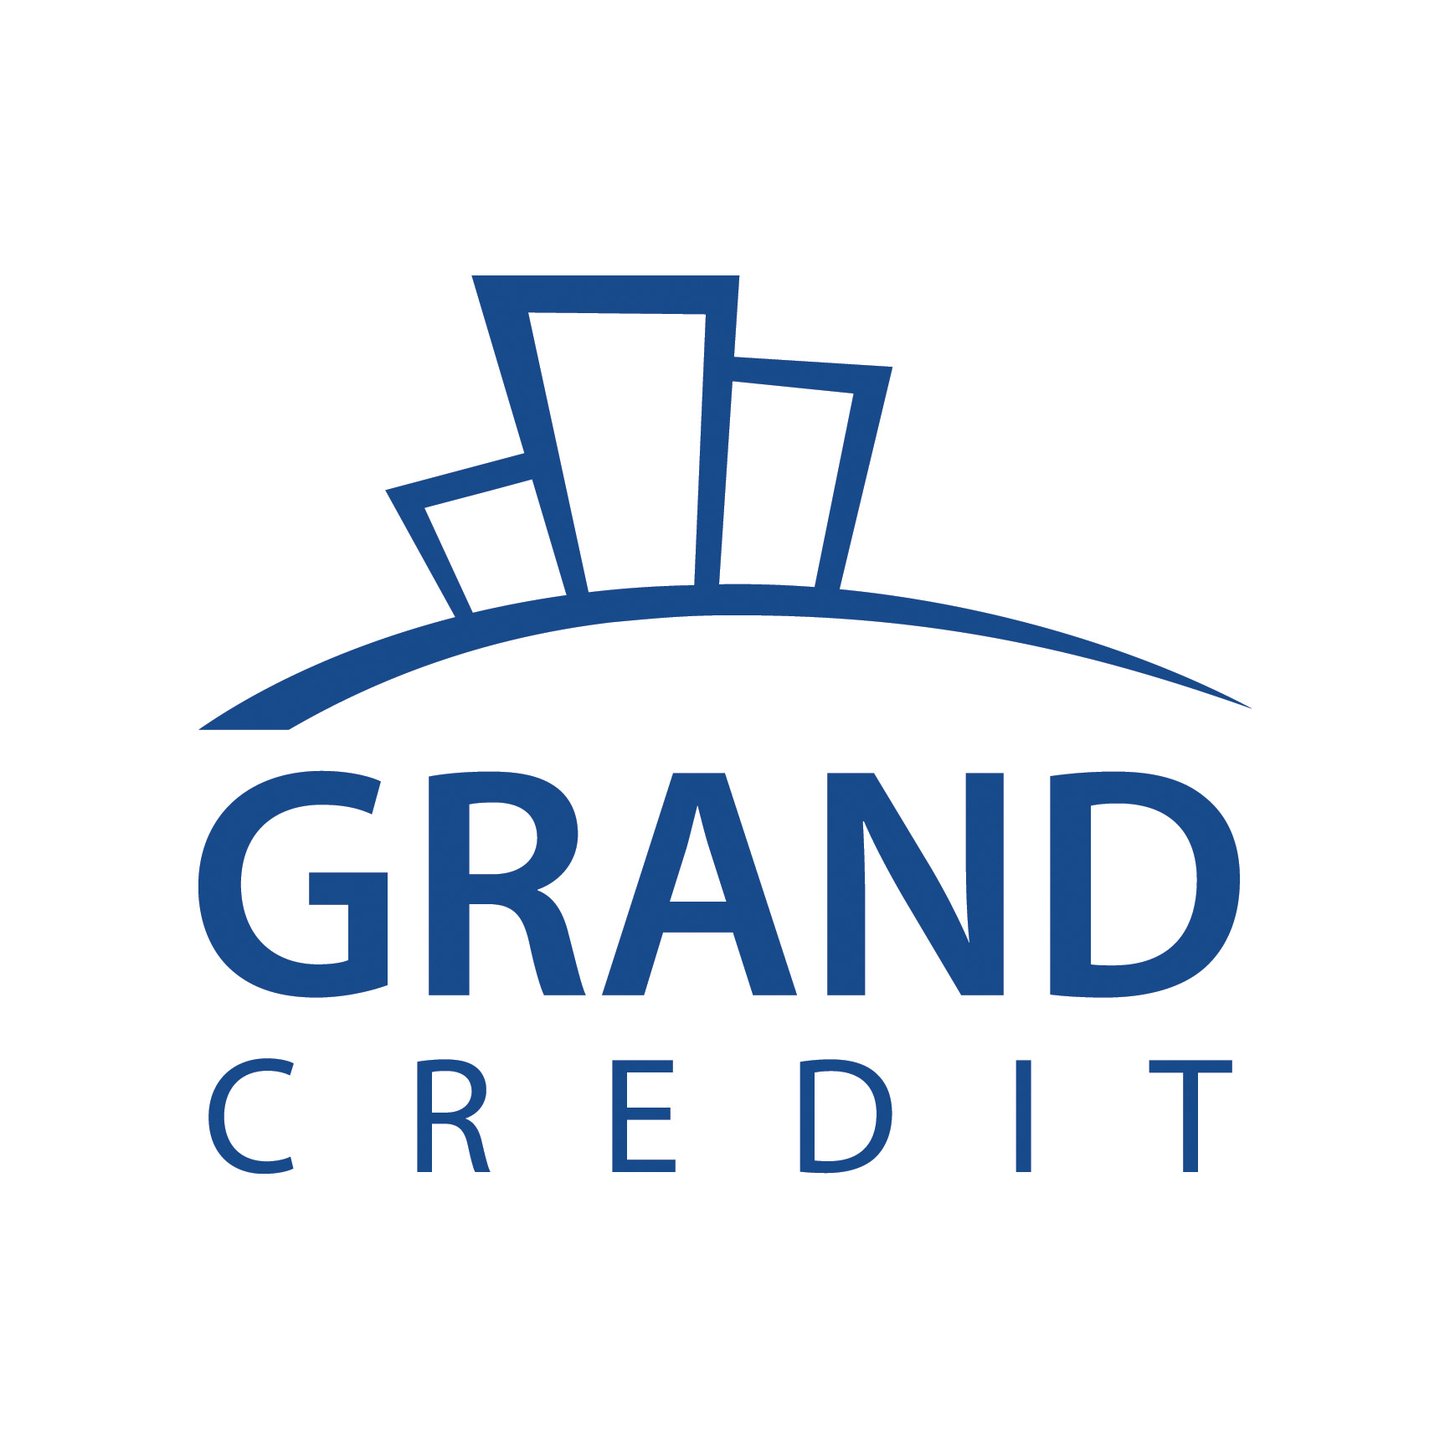 Grand Credit принял участие в благотворительном конкурсе "Шаг для лучшей жизни"